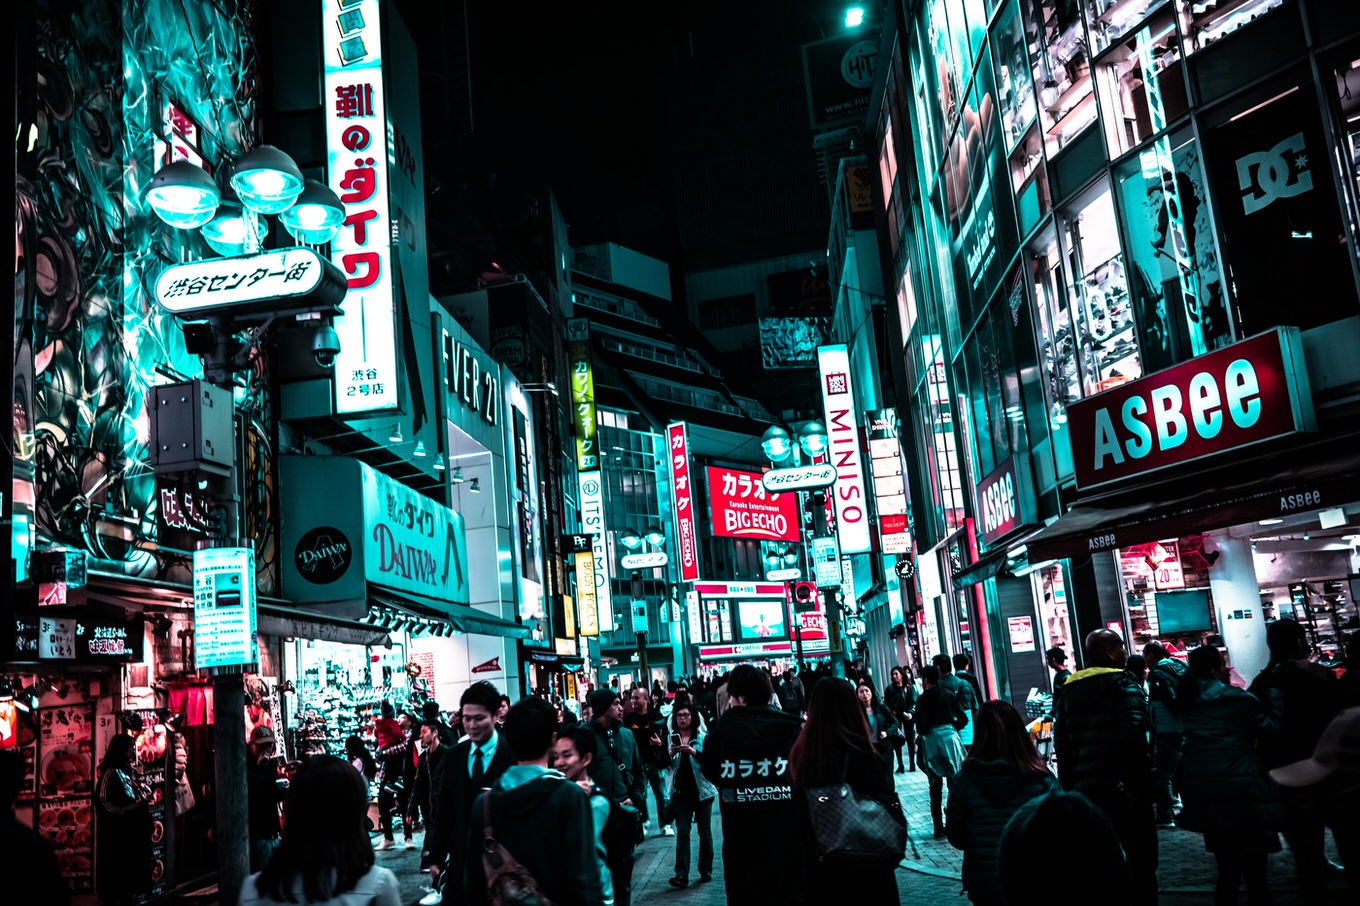 渋谷ハロウィン対策・予算1億円、25日から路上飲酒禁止　渋谷区観光協会がマナー啓発運動も開始